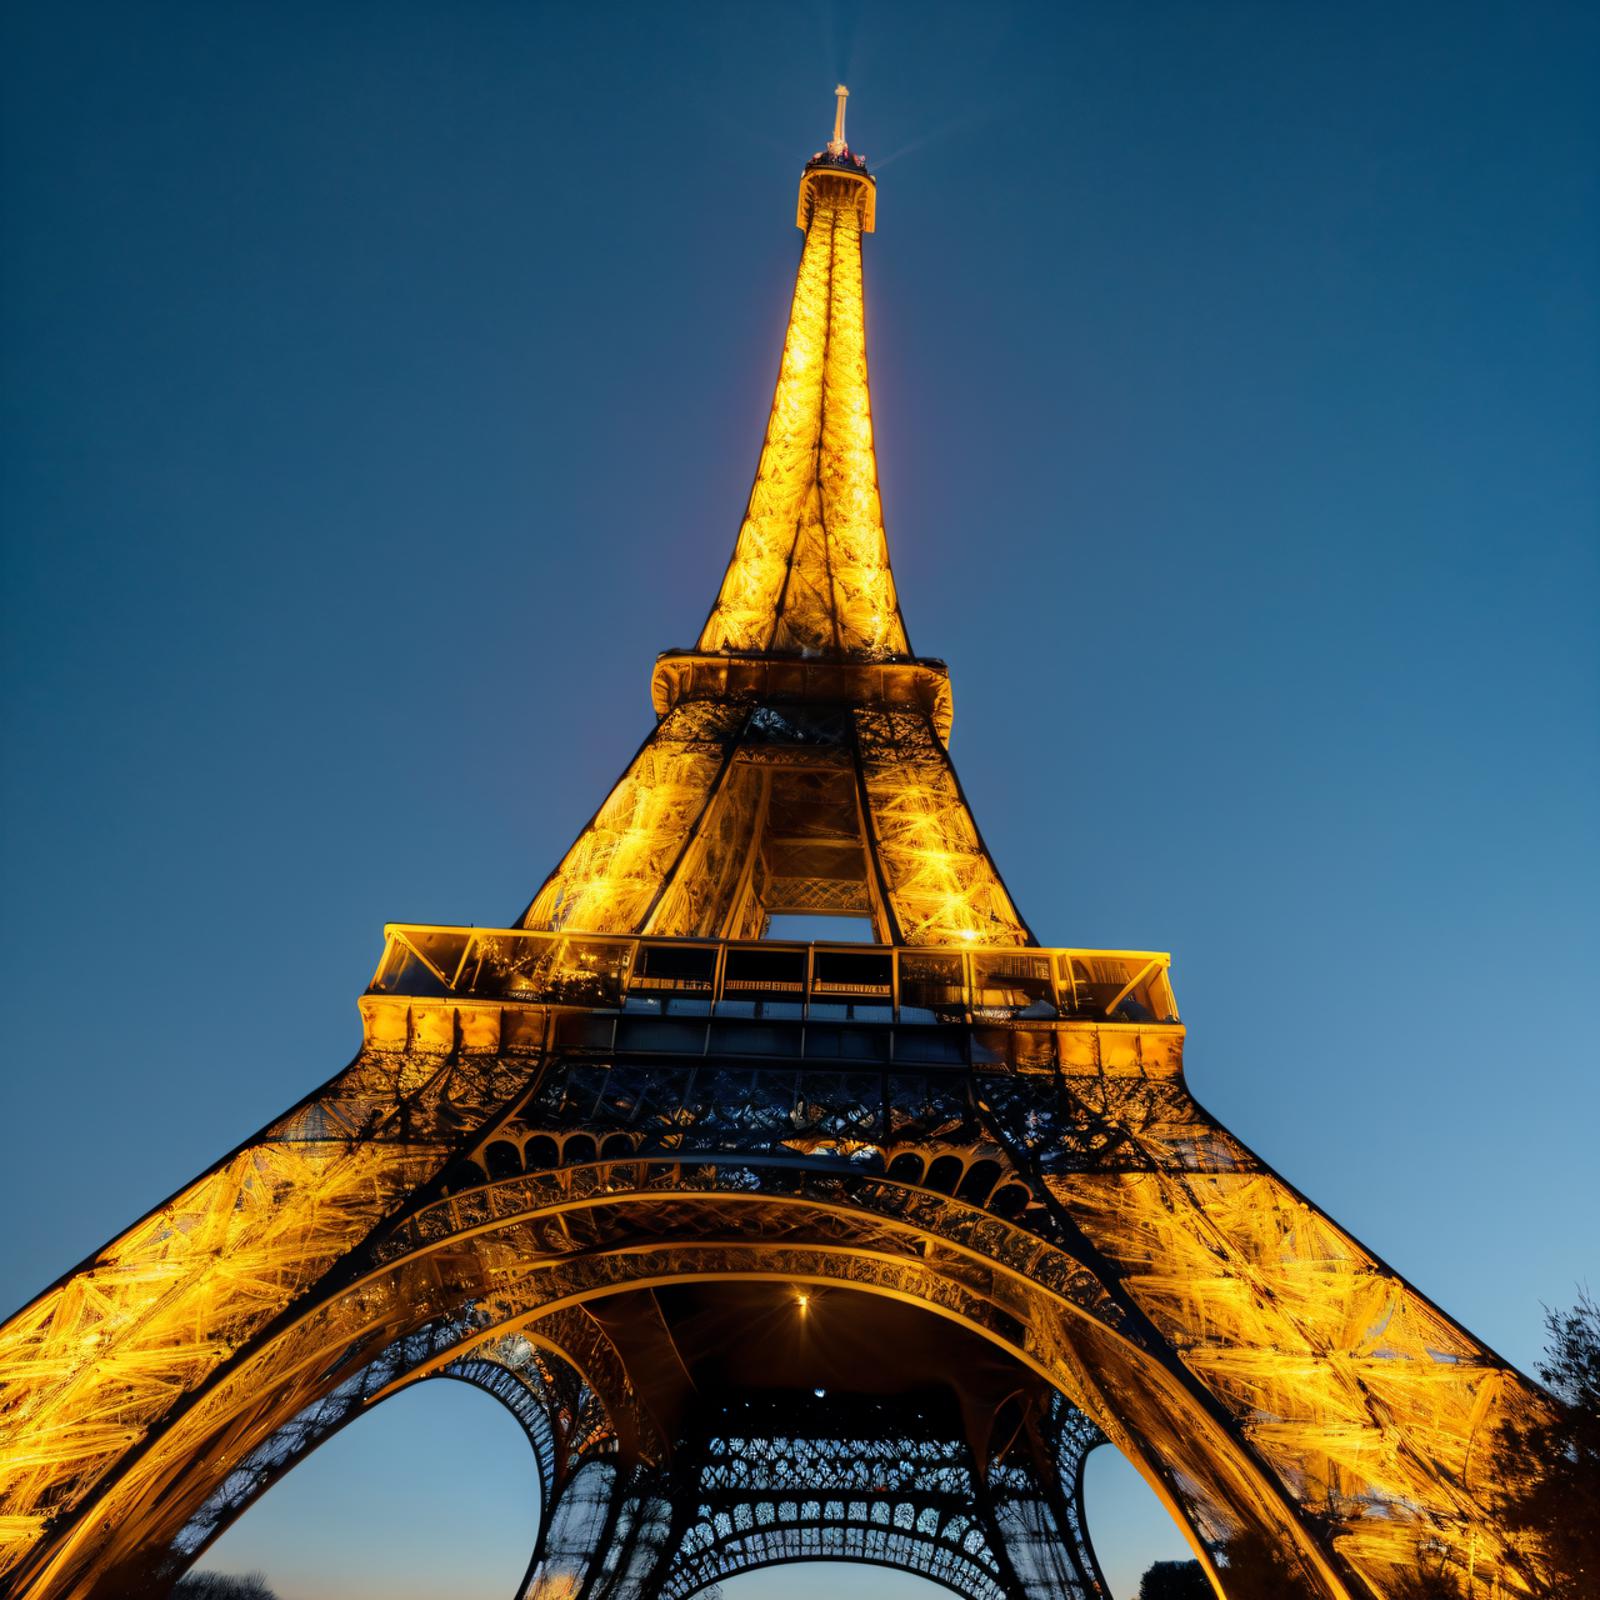 Eiffel Tower image by Boomfar